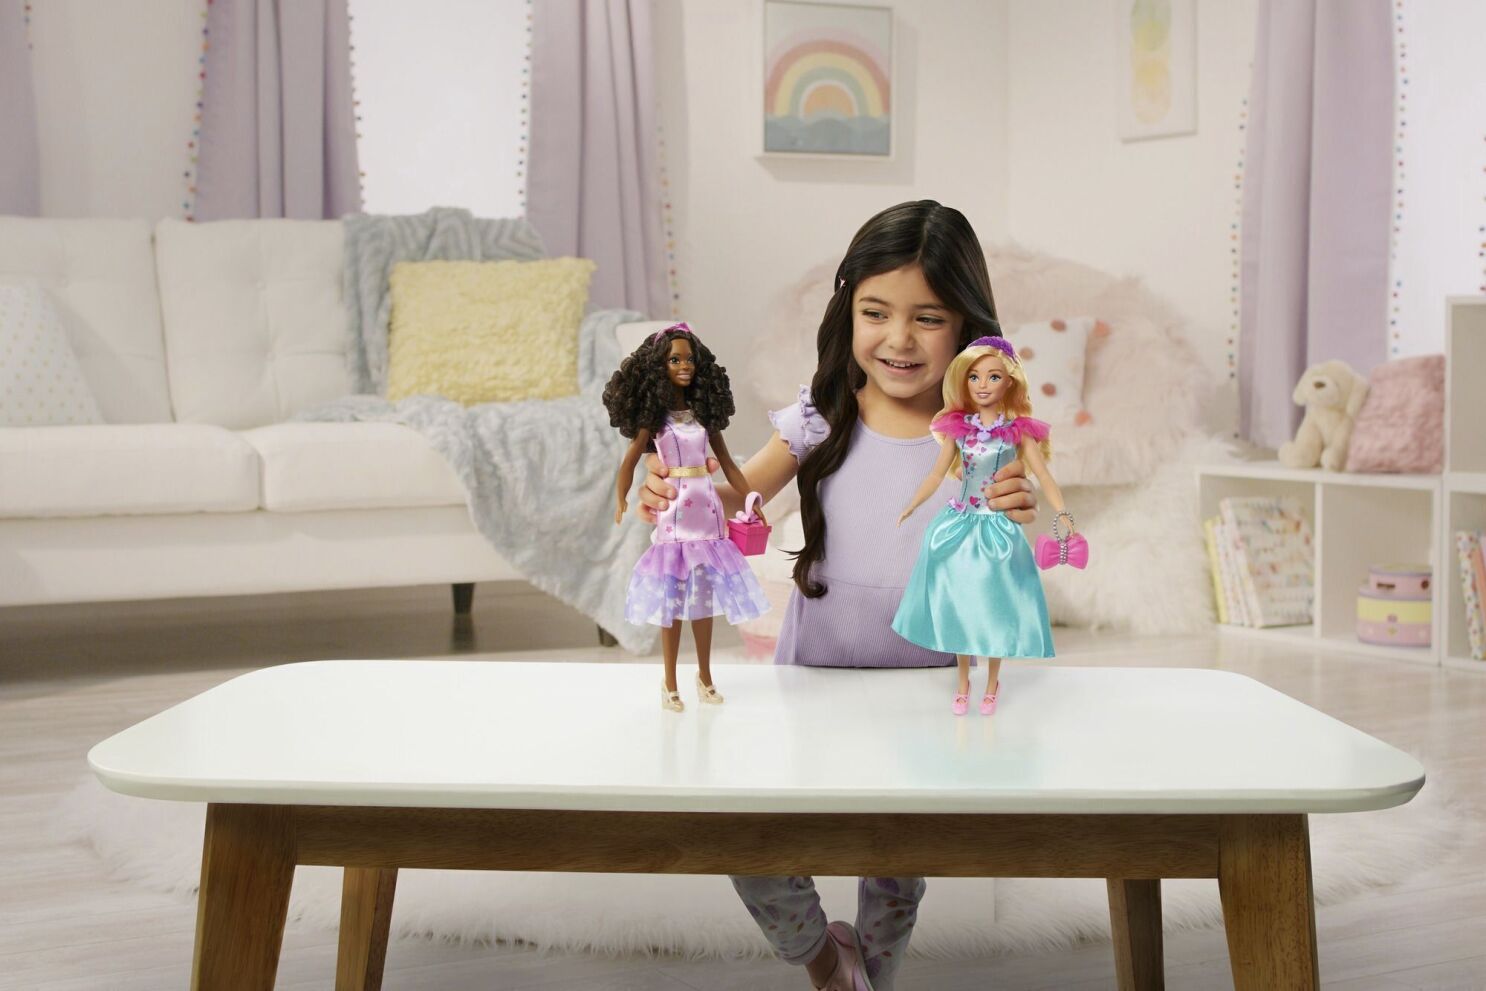 Proceso Sofisticado Examinar detenidamente Barbie lanza muñeca para preescolares - Los Angeles Times